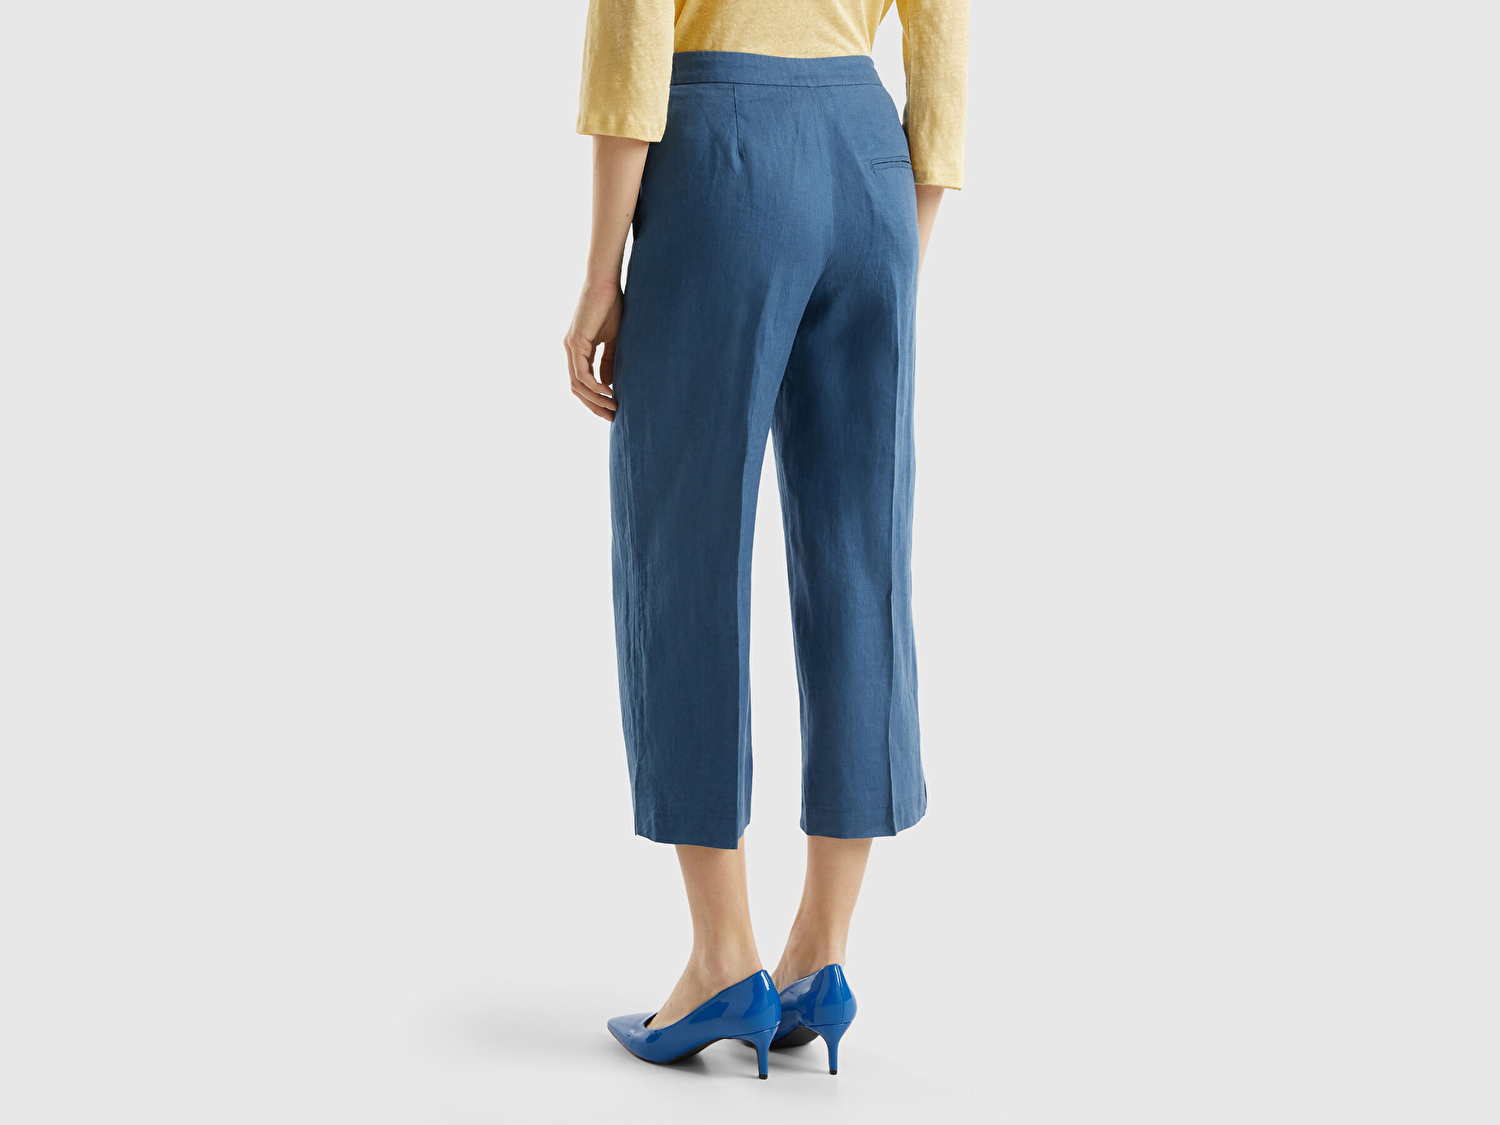 Benetton Kadın Gece Mavisi %100 Keten Düğmeli Yüksek Bel  Paçası Yırtmaçlı Pantolon